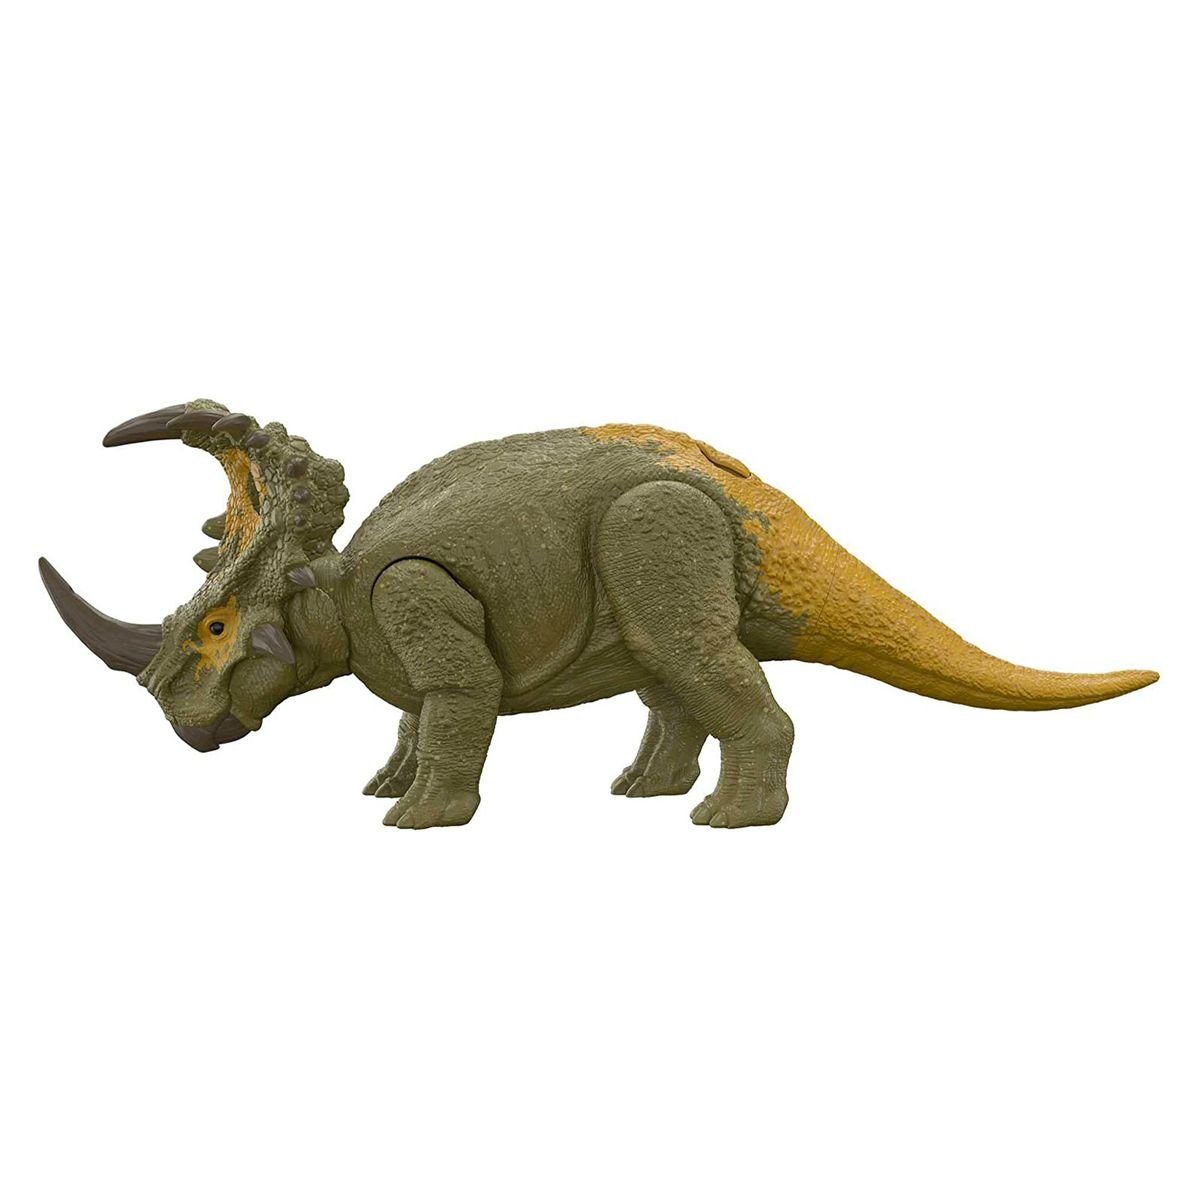 Dominion Spielfigur World Roar - Dinosaurier - Jurassic Sinoceratops, Strikers HDX43 Spielfigur - Mattel Mattel®